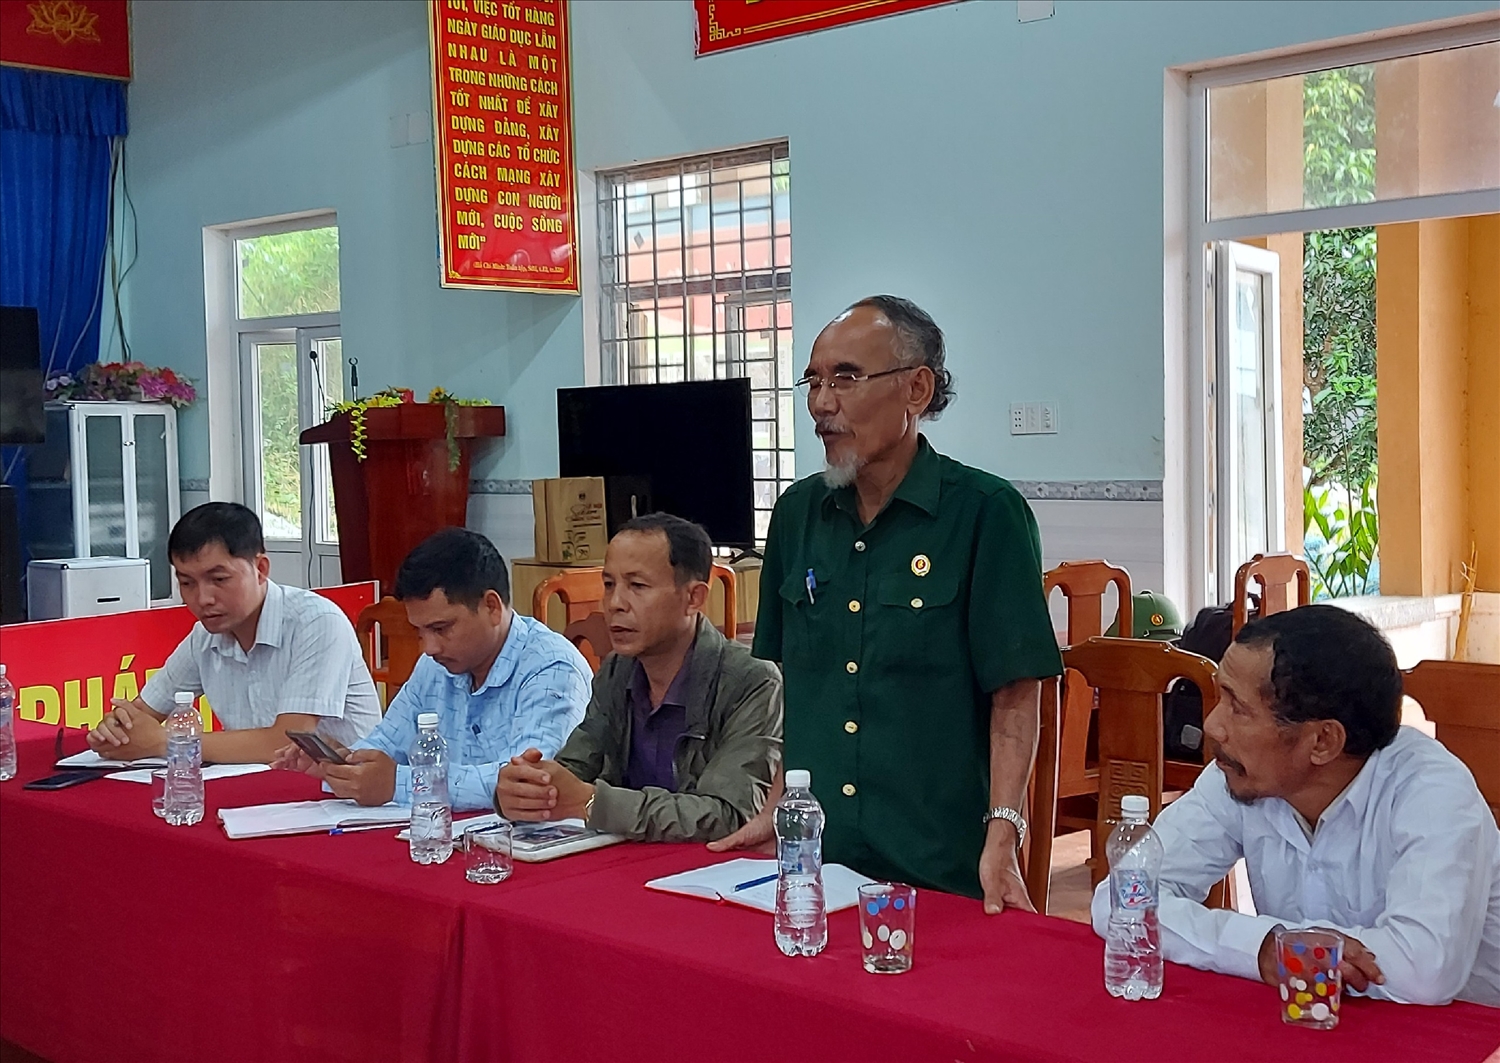 Già Nguyễn Thành Tiêu tham gia đóng góp ý kiến tại Hội thảo “Bảo tồn bản sắc văn hóa dân tộc” tổ chức tại xã Trà Leng.